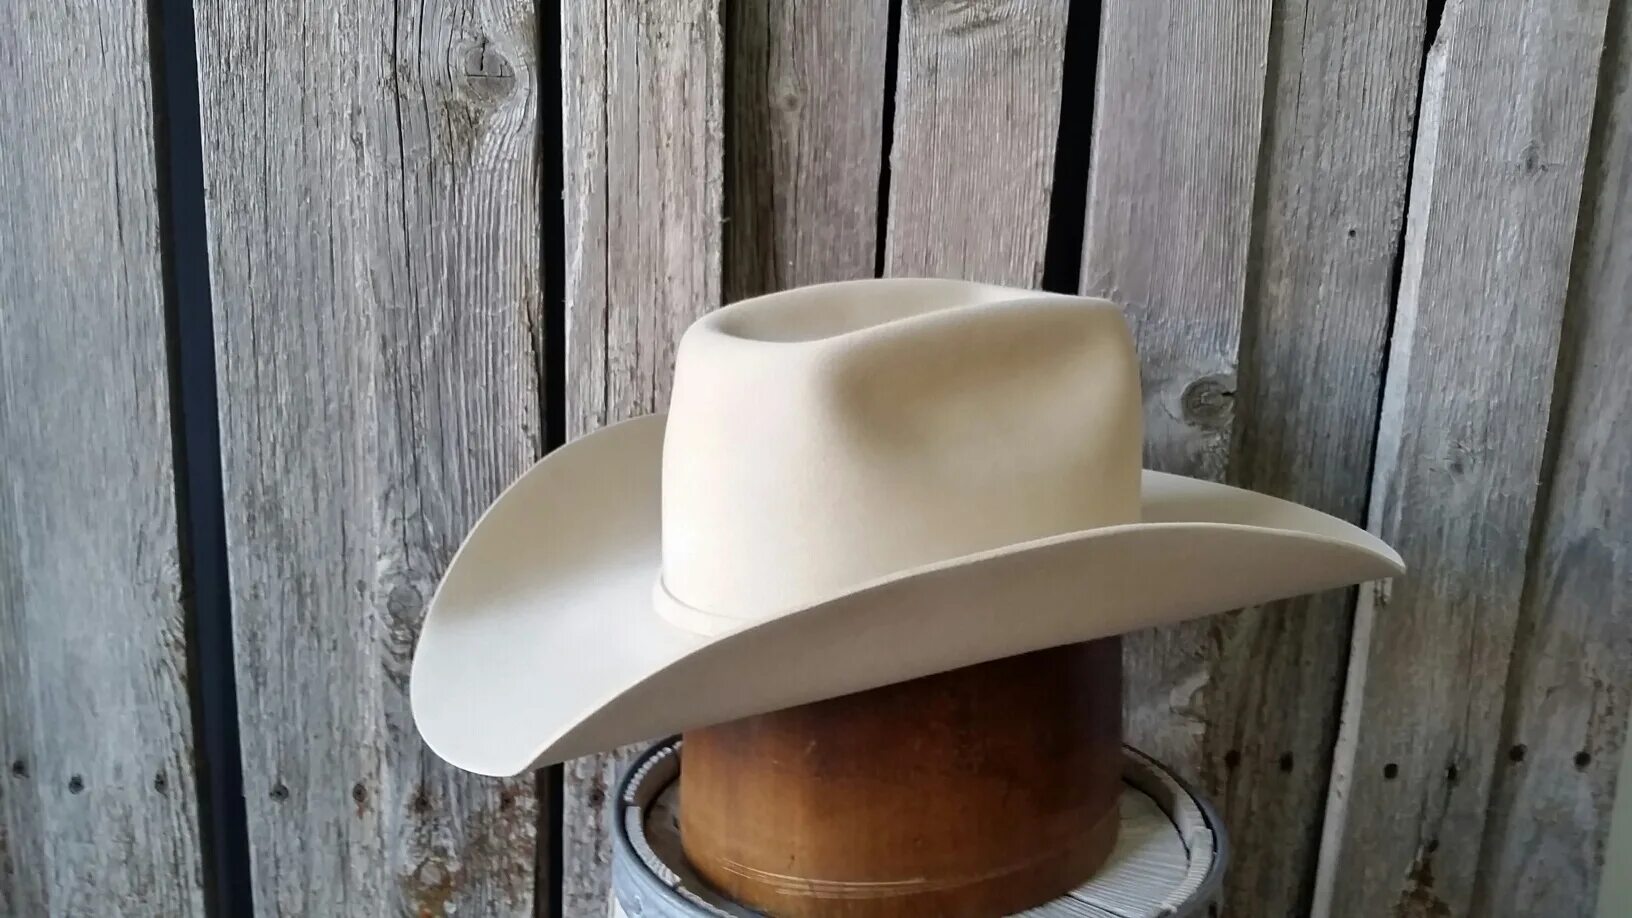 Ковбойская шляпа. Белая ковбойская шляпа. Настоящая ковбойская шляпа. Ковбойская шляпа с клыками. Каска в форме шляпы